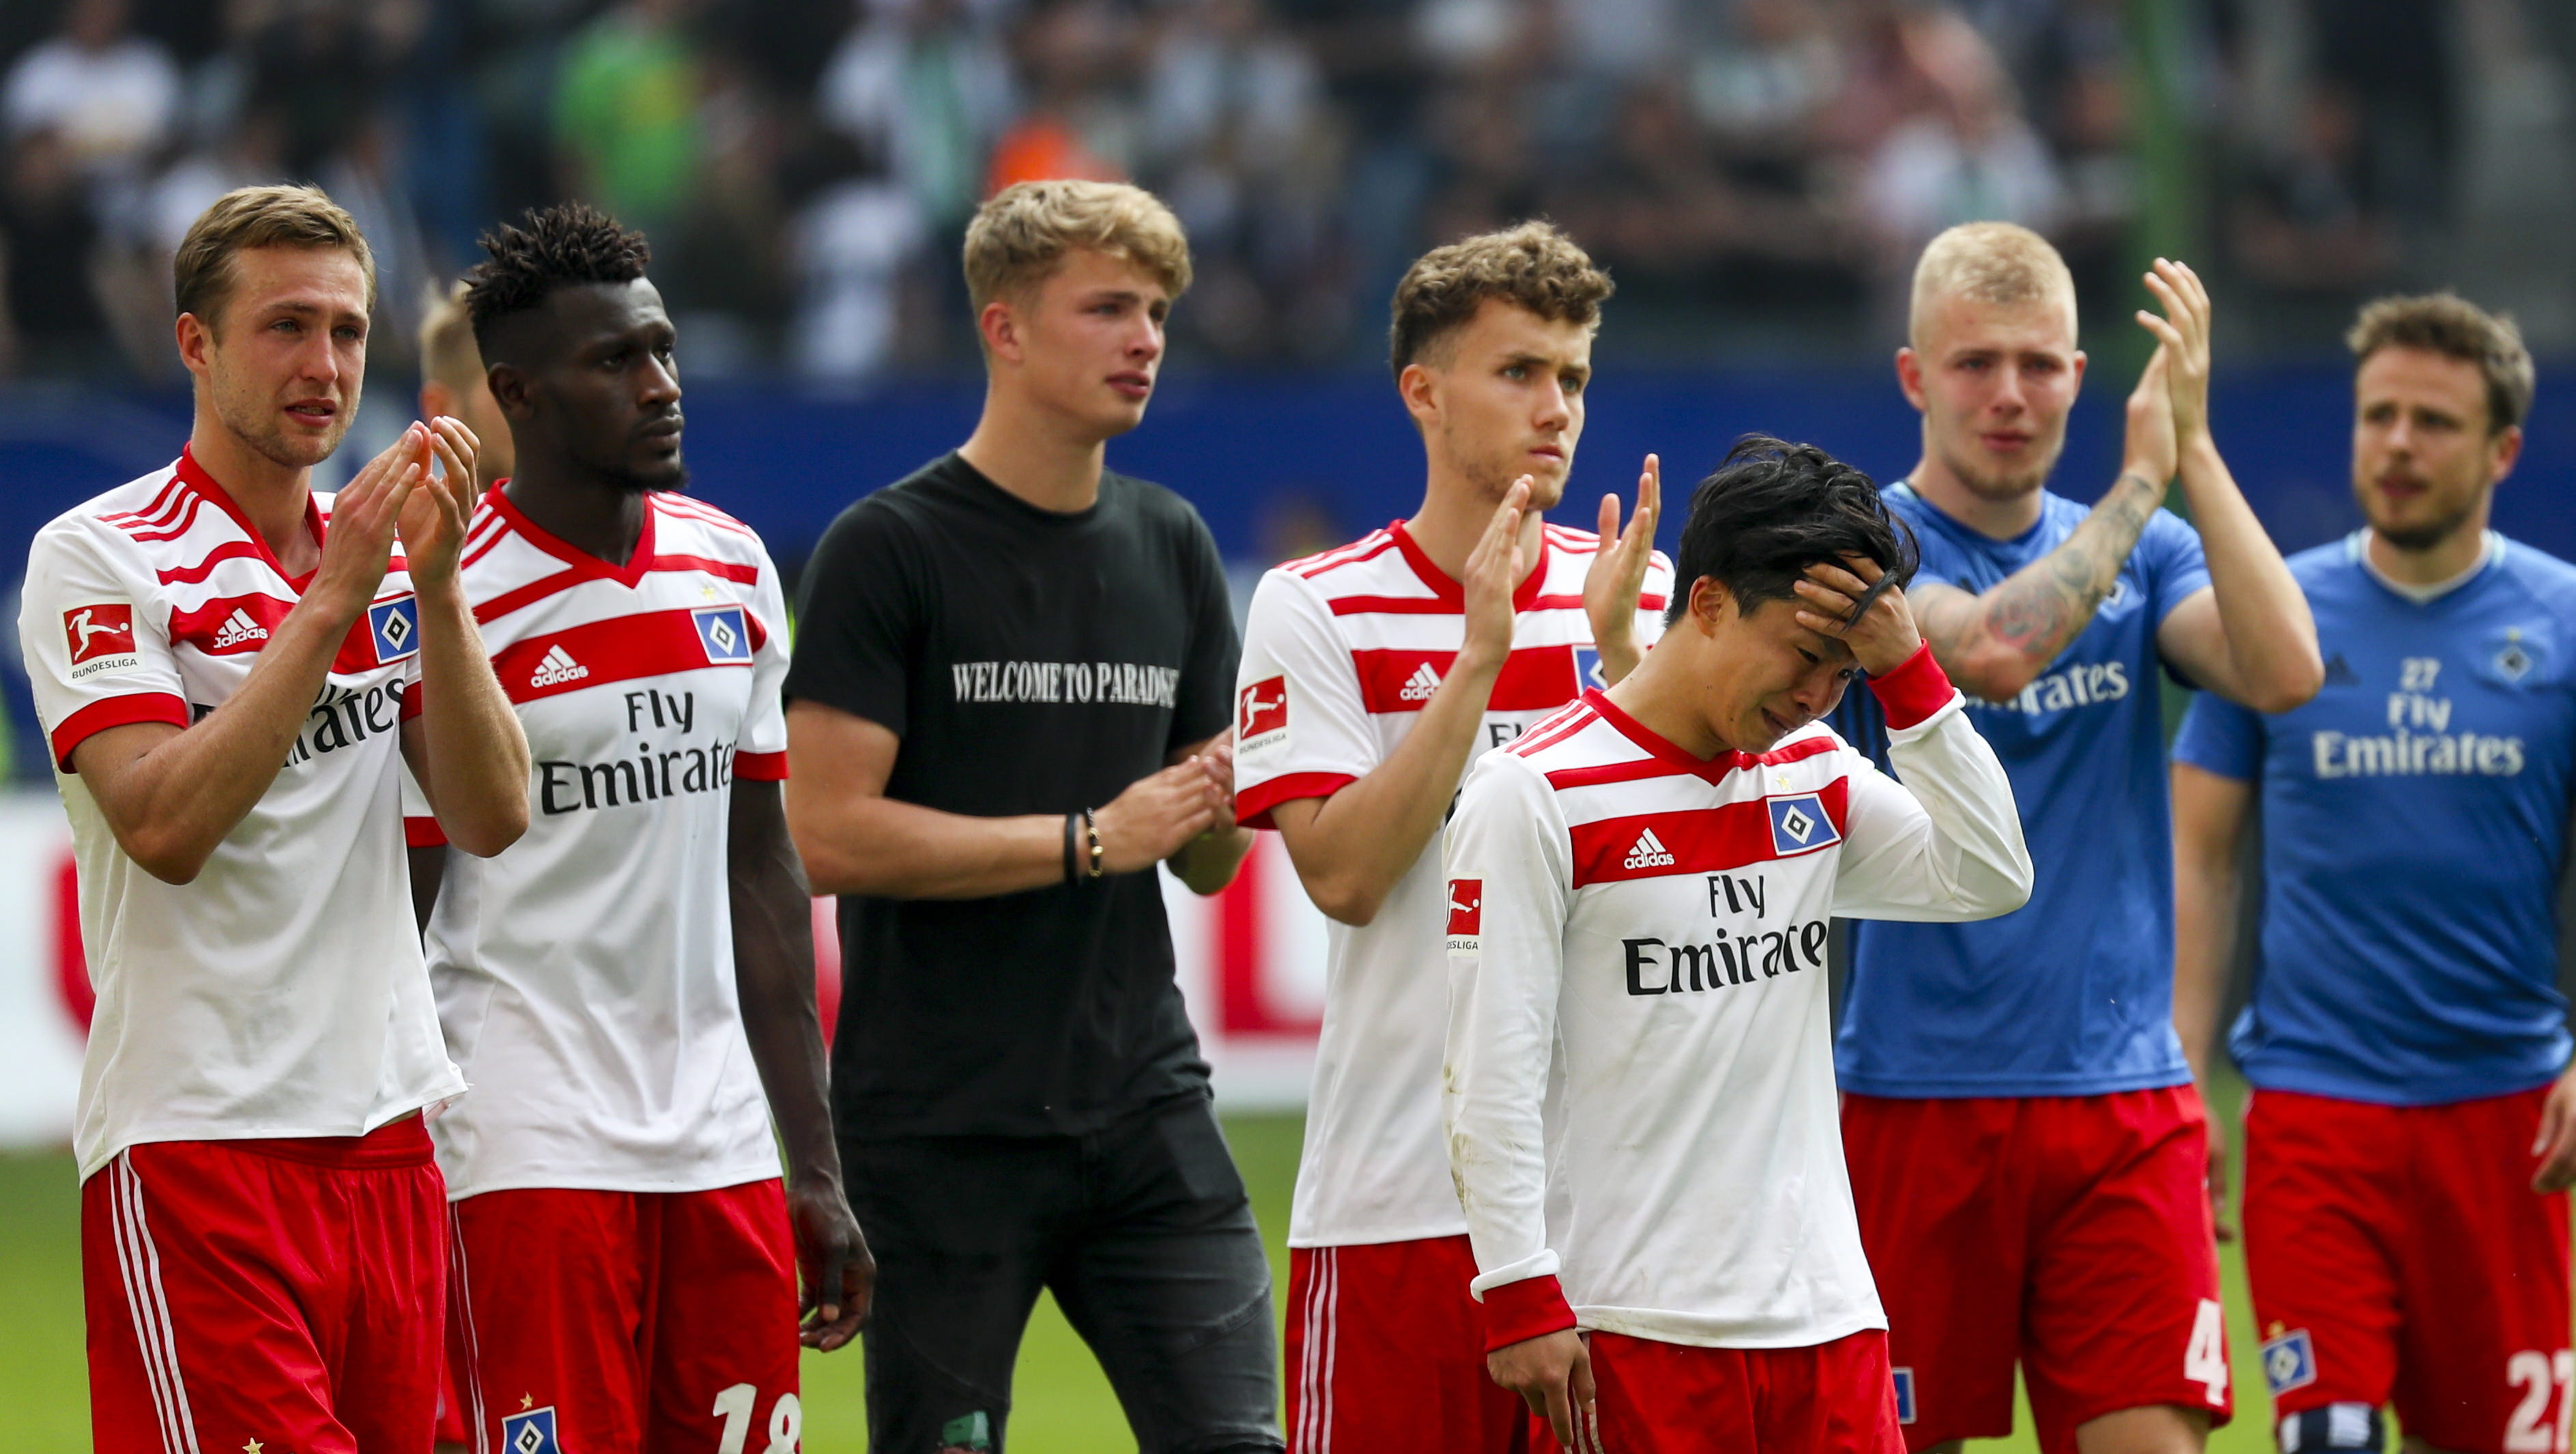 Durante el partido, unos hinchas del Hamburgo lanzaron petardos al área del equipo contrario.